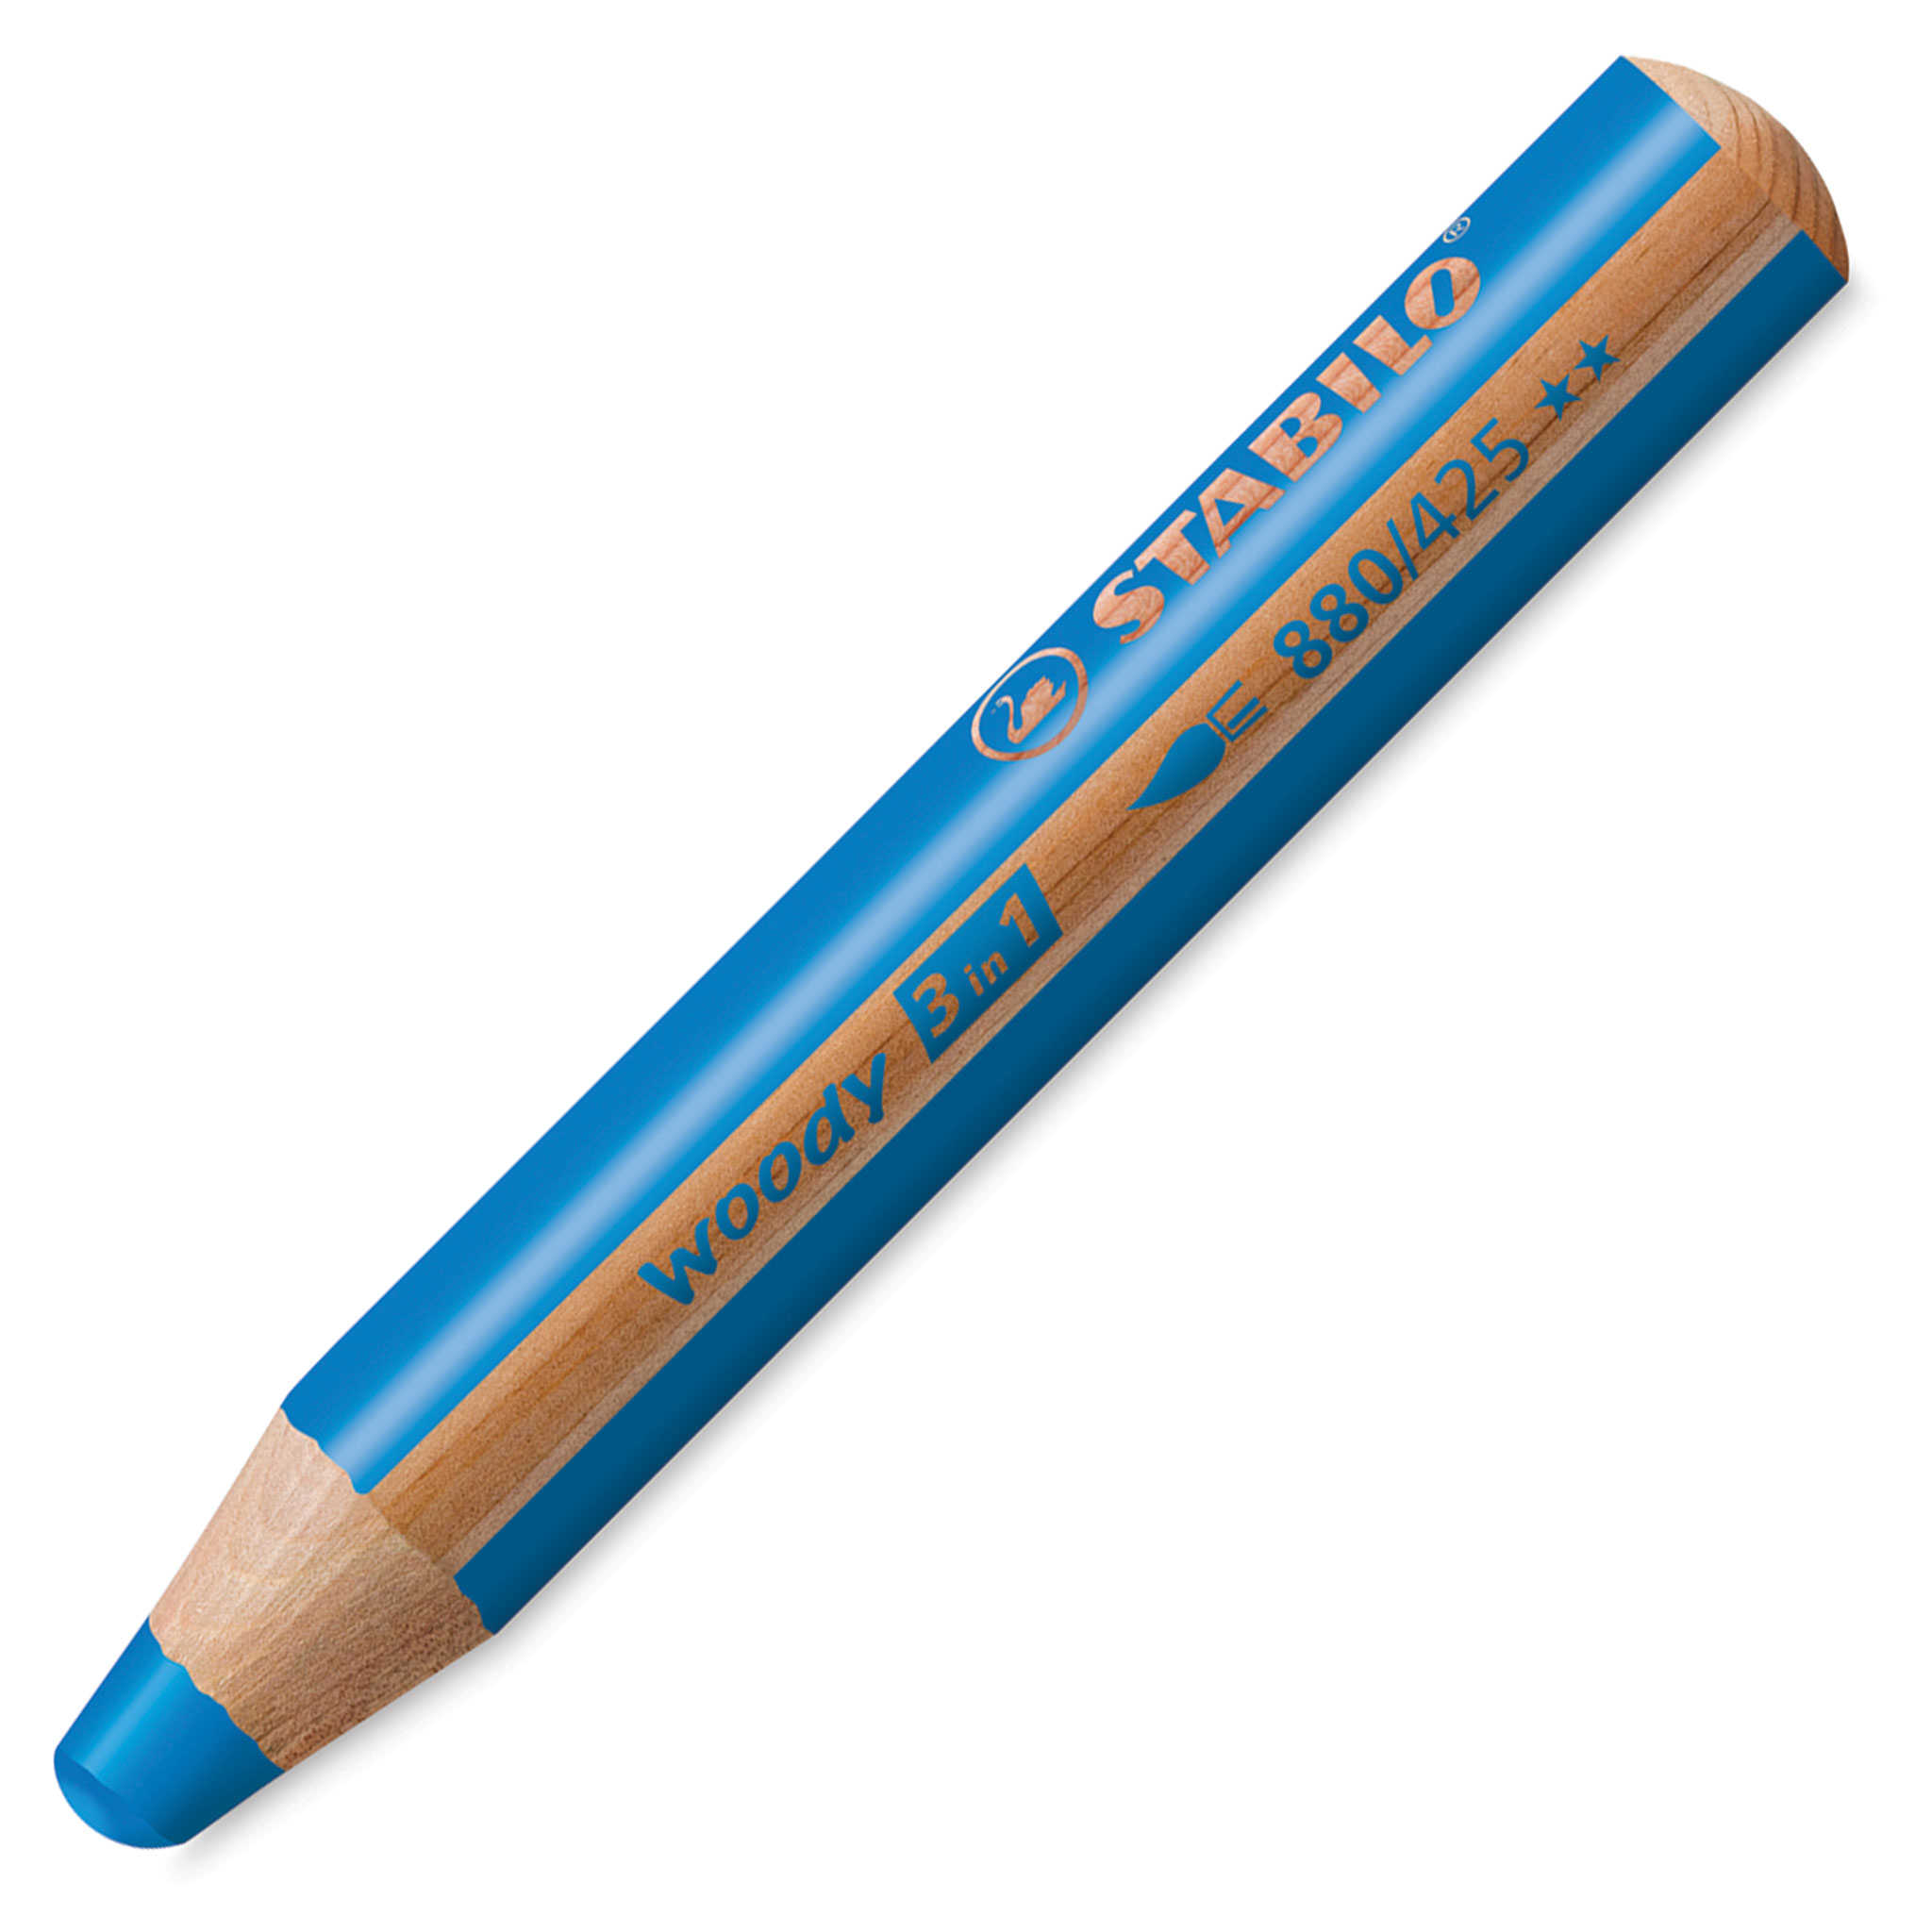 Crayons de couleur STABILO WOODY 3 en 1